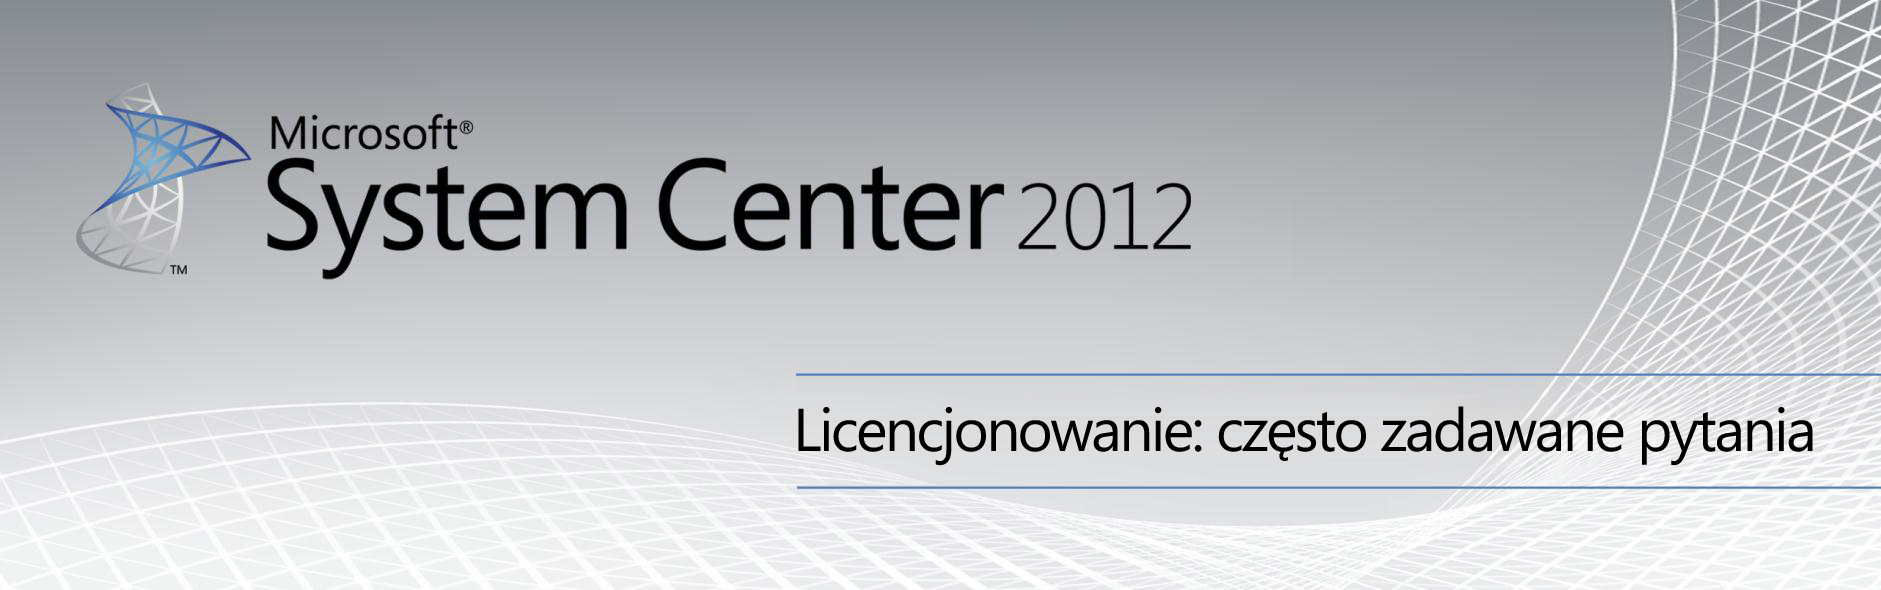 Spis treści Licencjonowanie funkcji zarządzania System Center 2012 Server... 2 1. Co nowego w licencjonowaniu programu System Center 2012?...... 2 2.